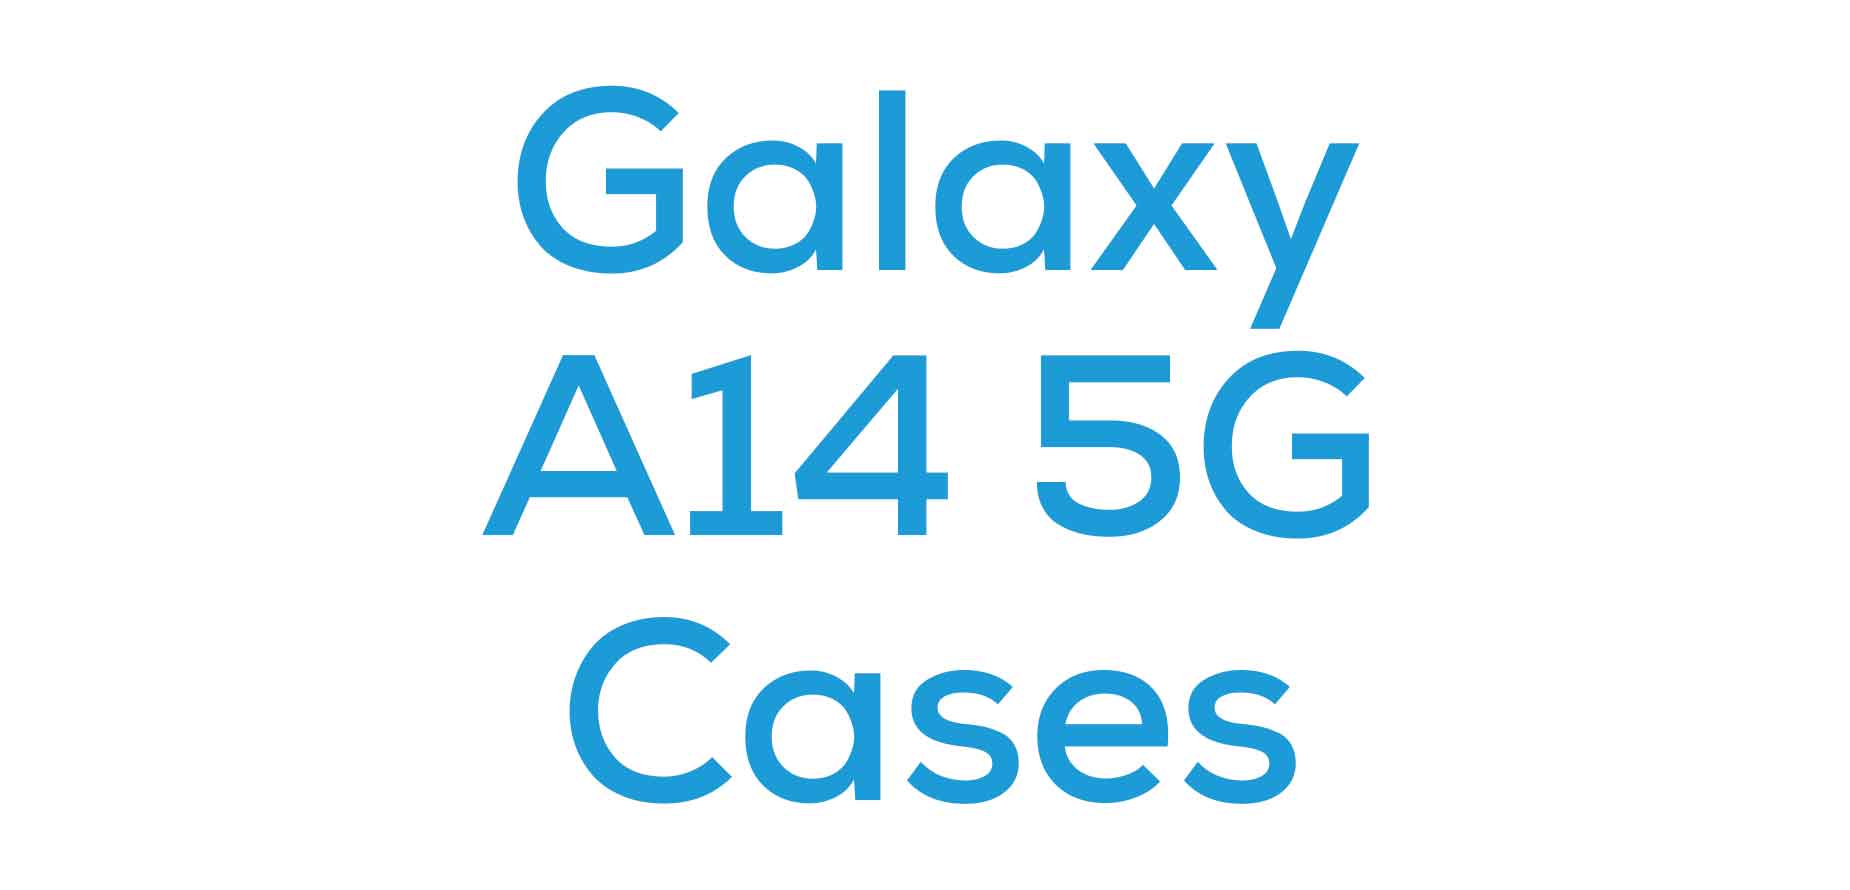 Galaxy A14 5G Cases